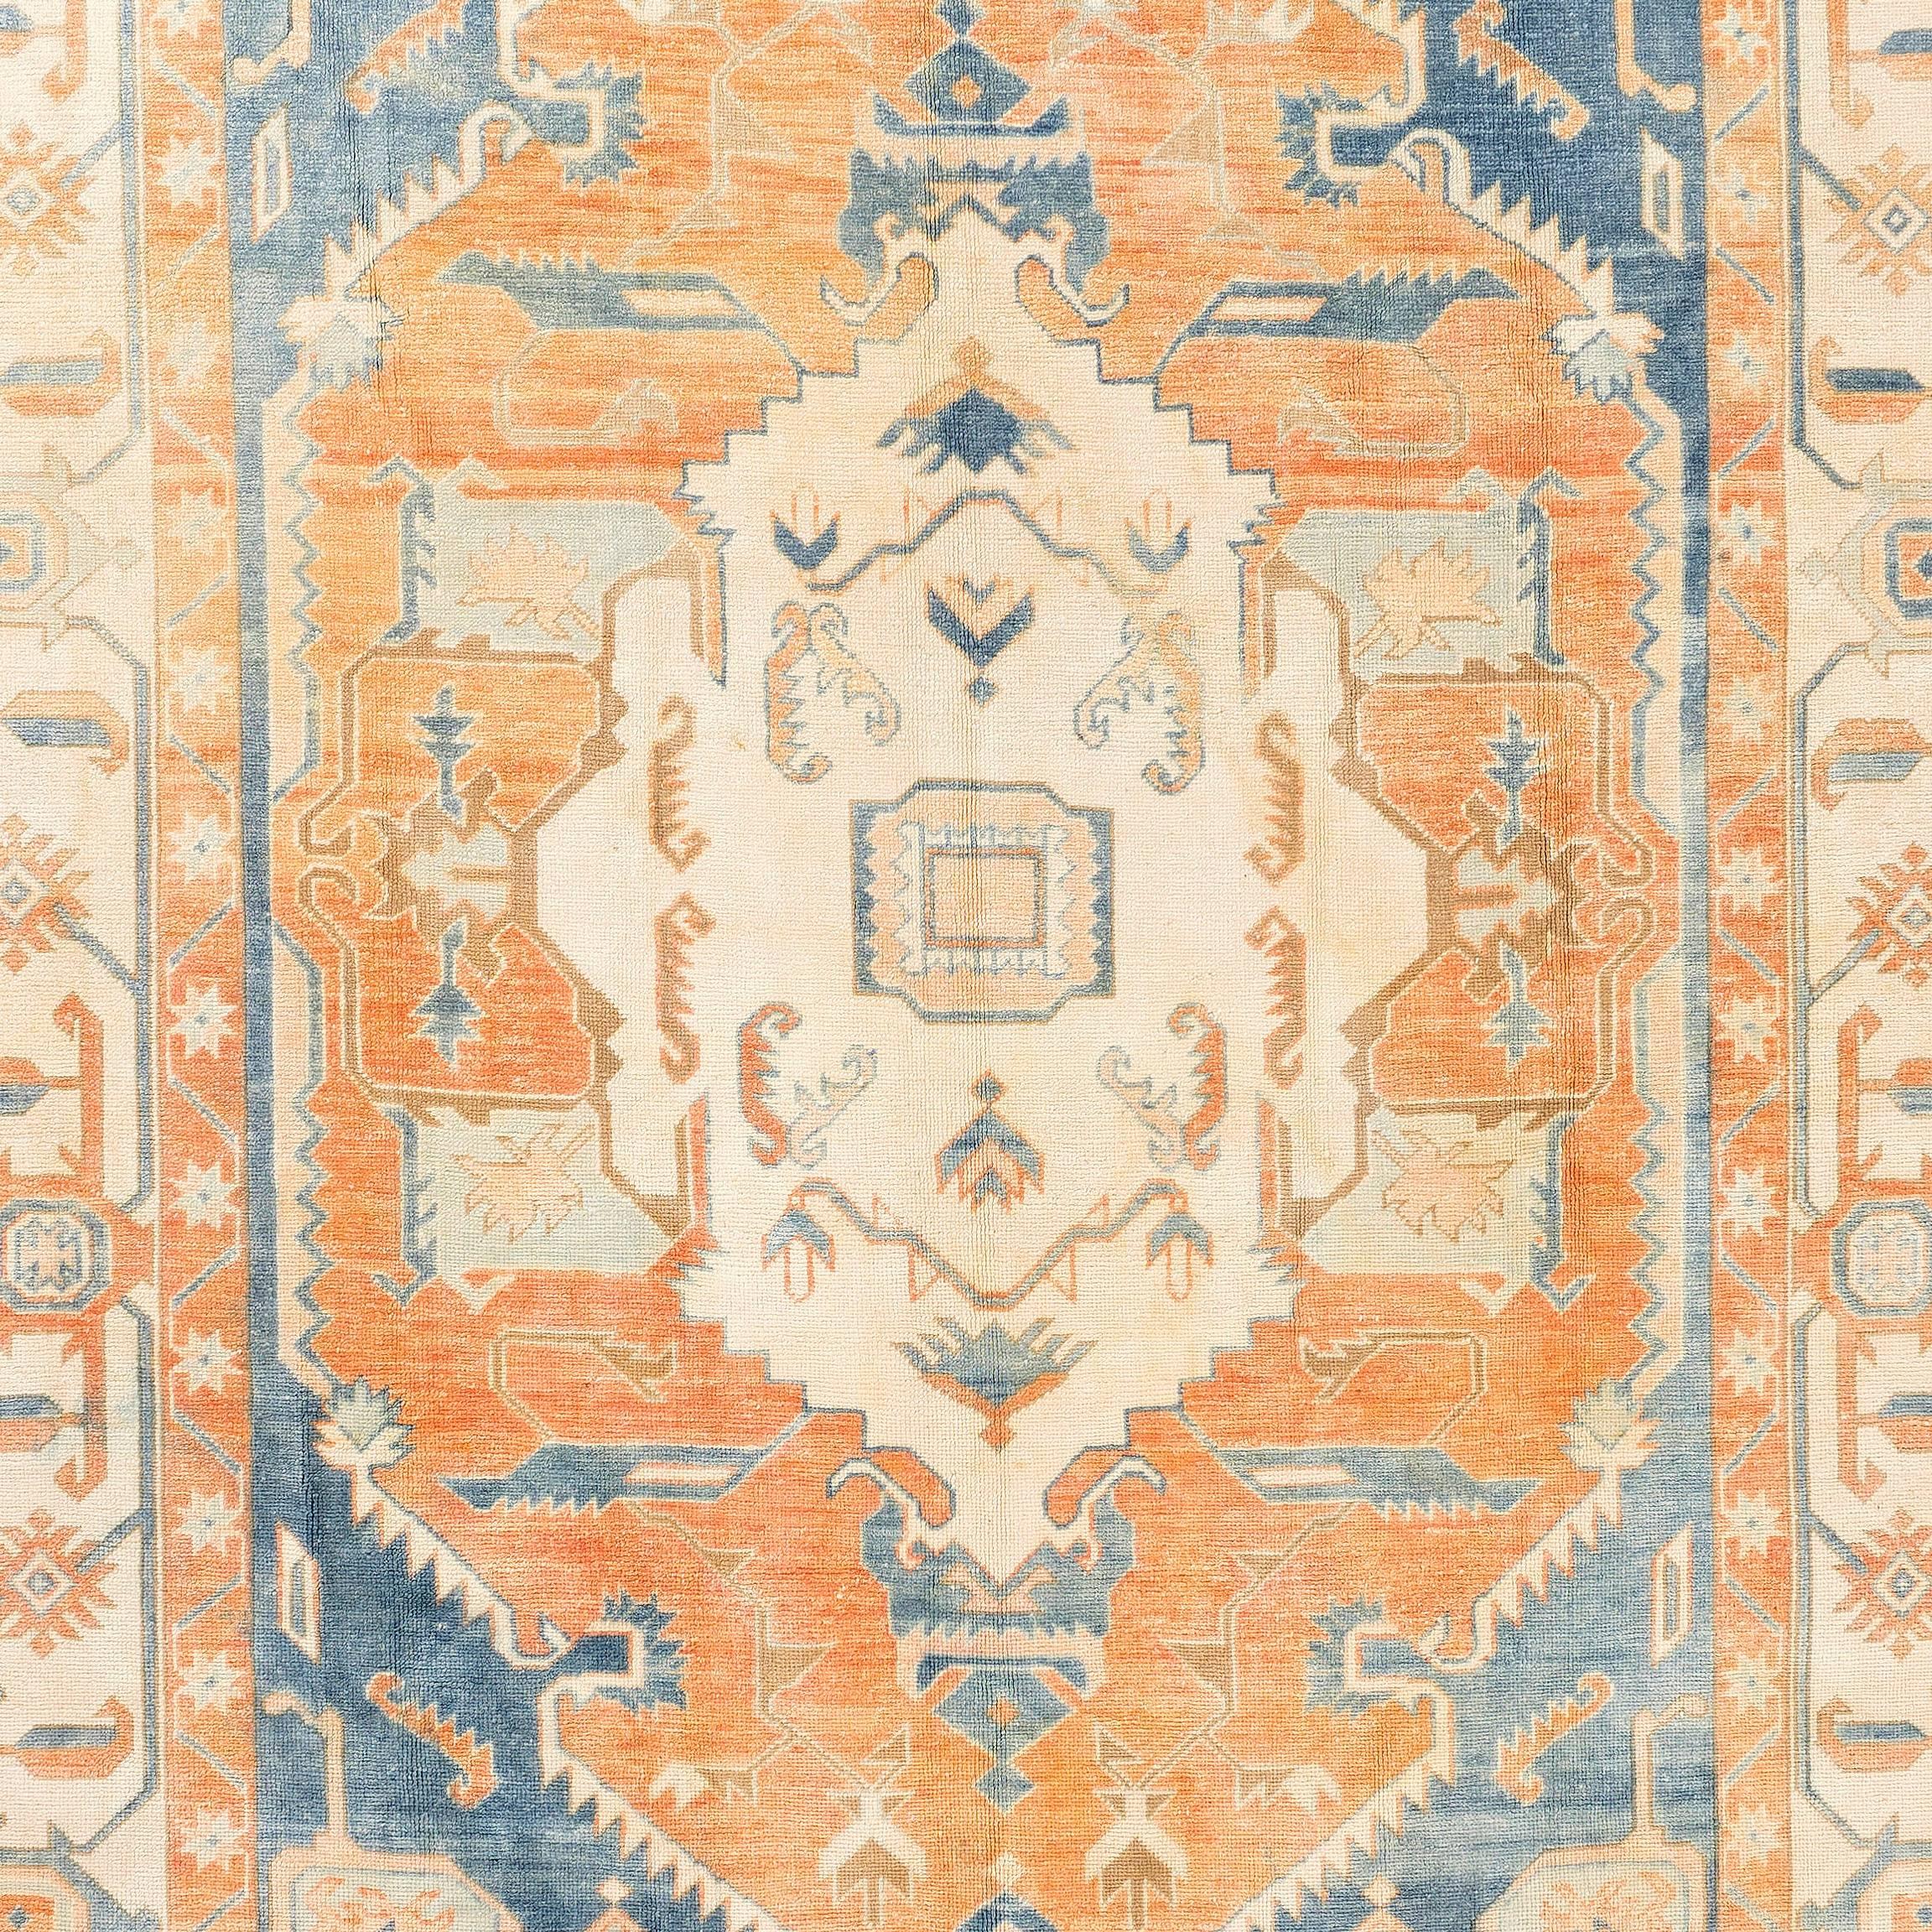 Turkish 8.8x12.4 Vintage Anatolian Wool Rug. Light Blue, Rust, Peach Ivory-Cream Colors 